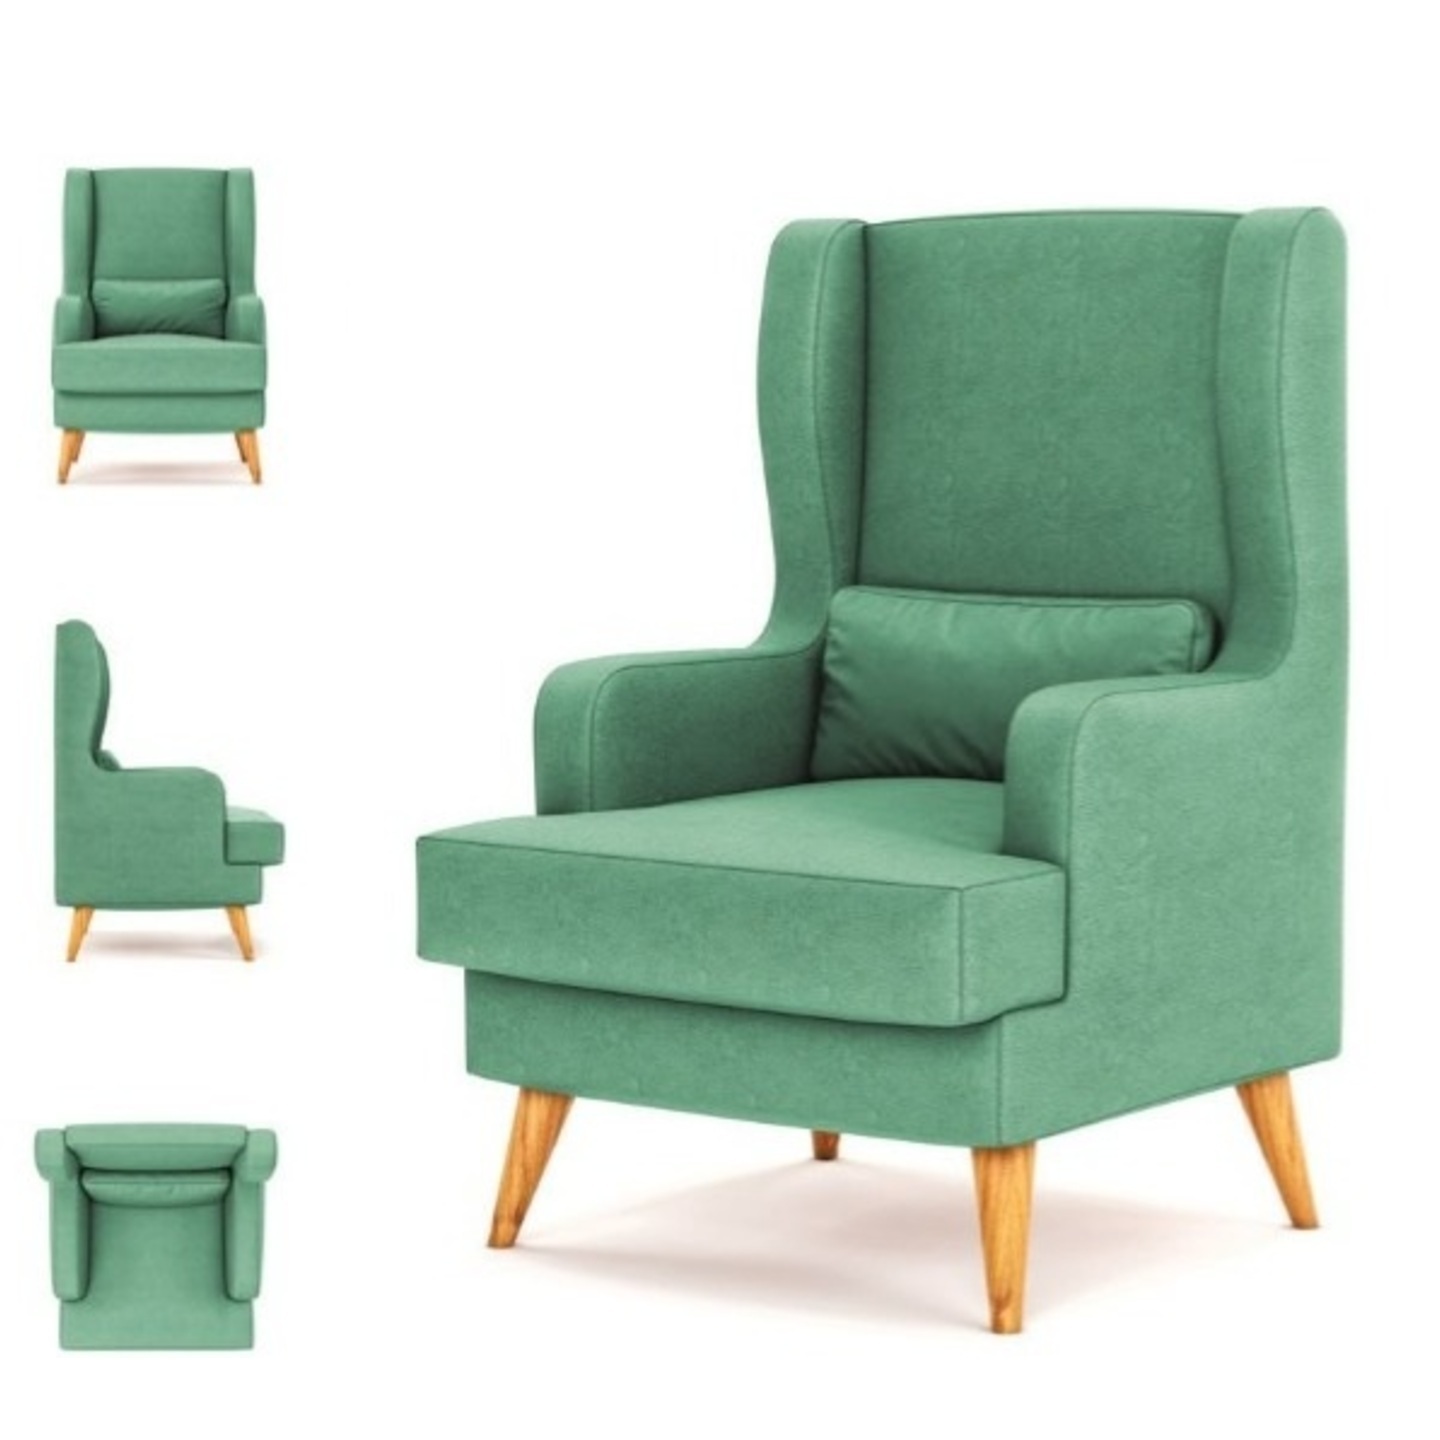 DDF Sofa Chair C-02 In Green Colour